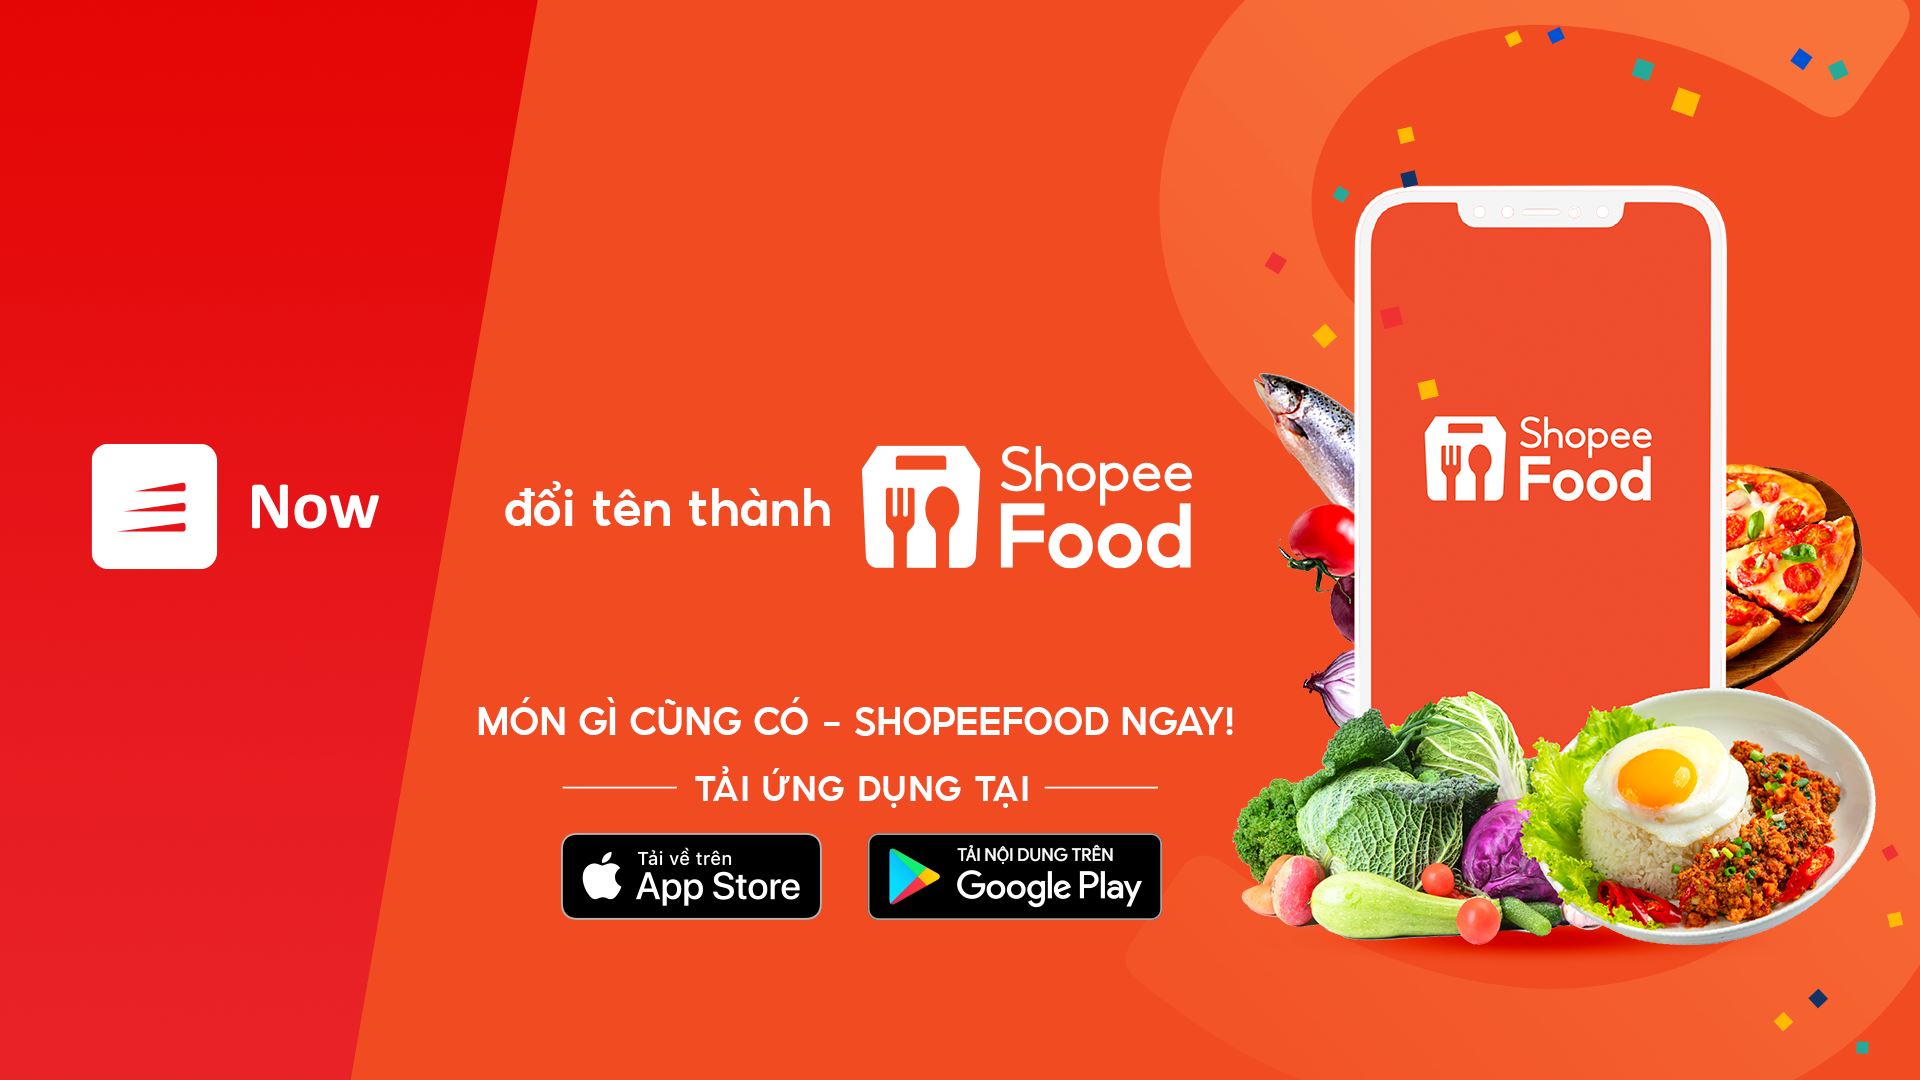 Ứng dụng đặt đồ ăn Now đã đổi tên thành Shopee Food từ ngày 18/8/2021